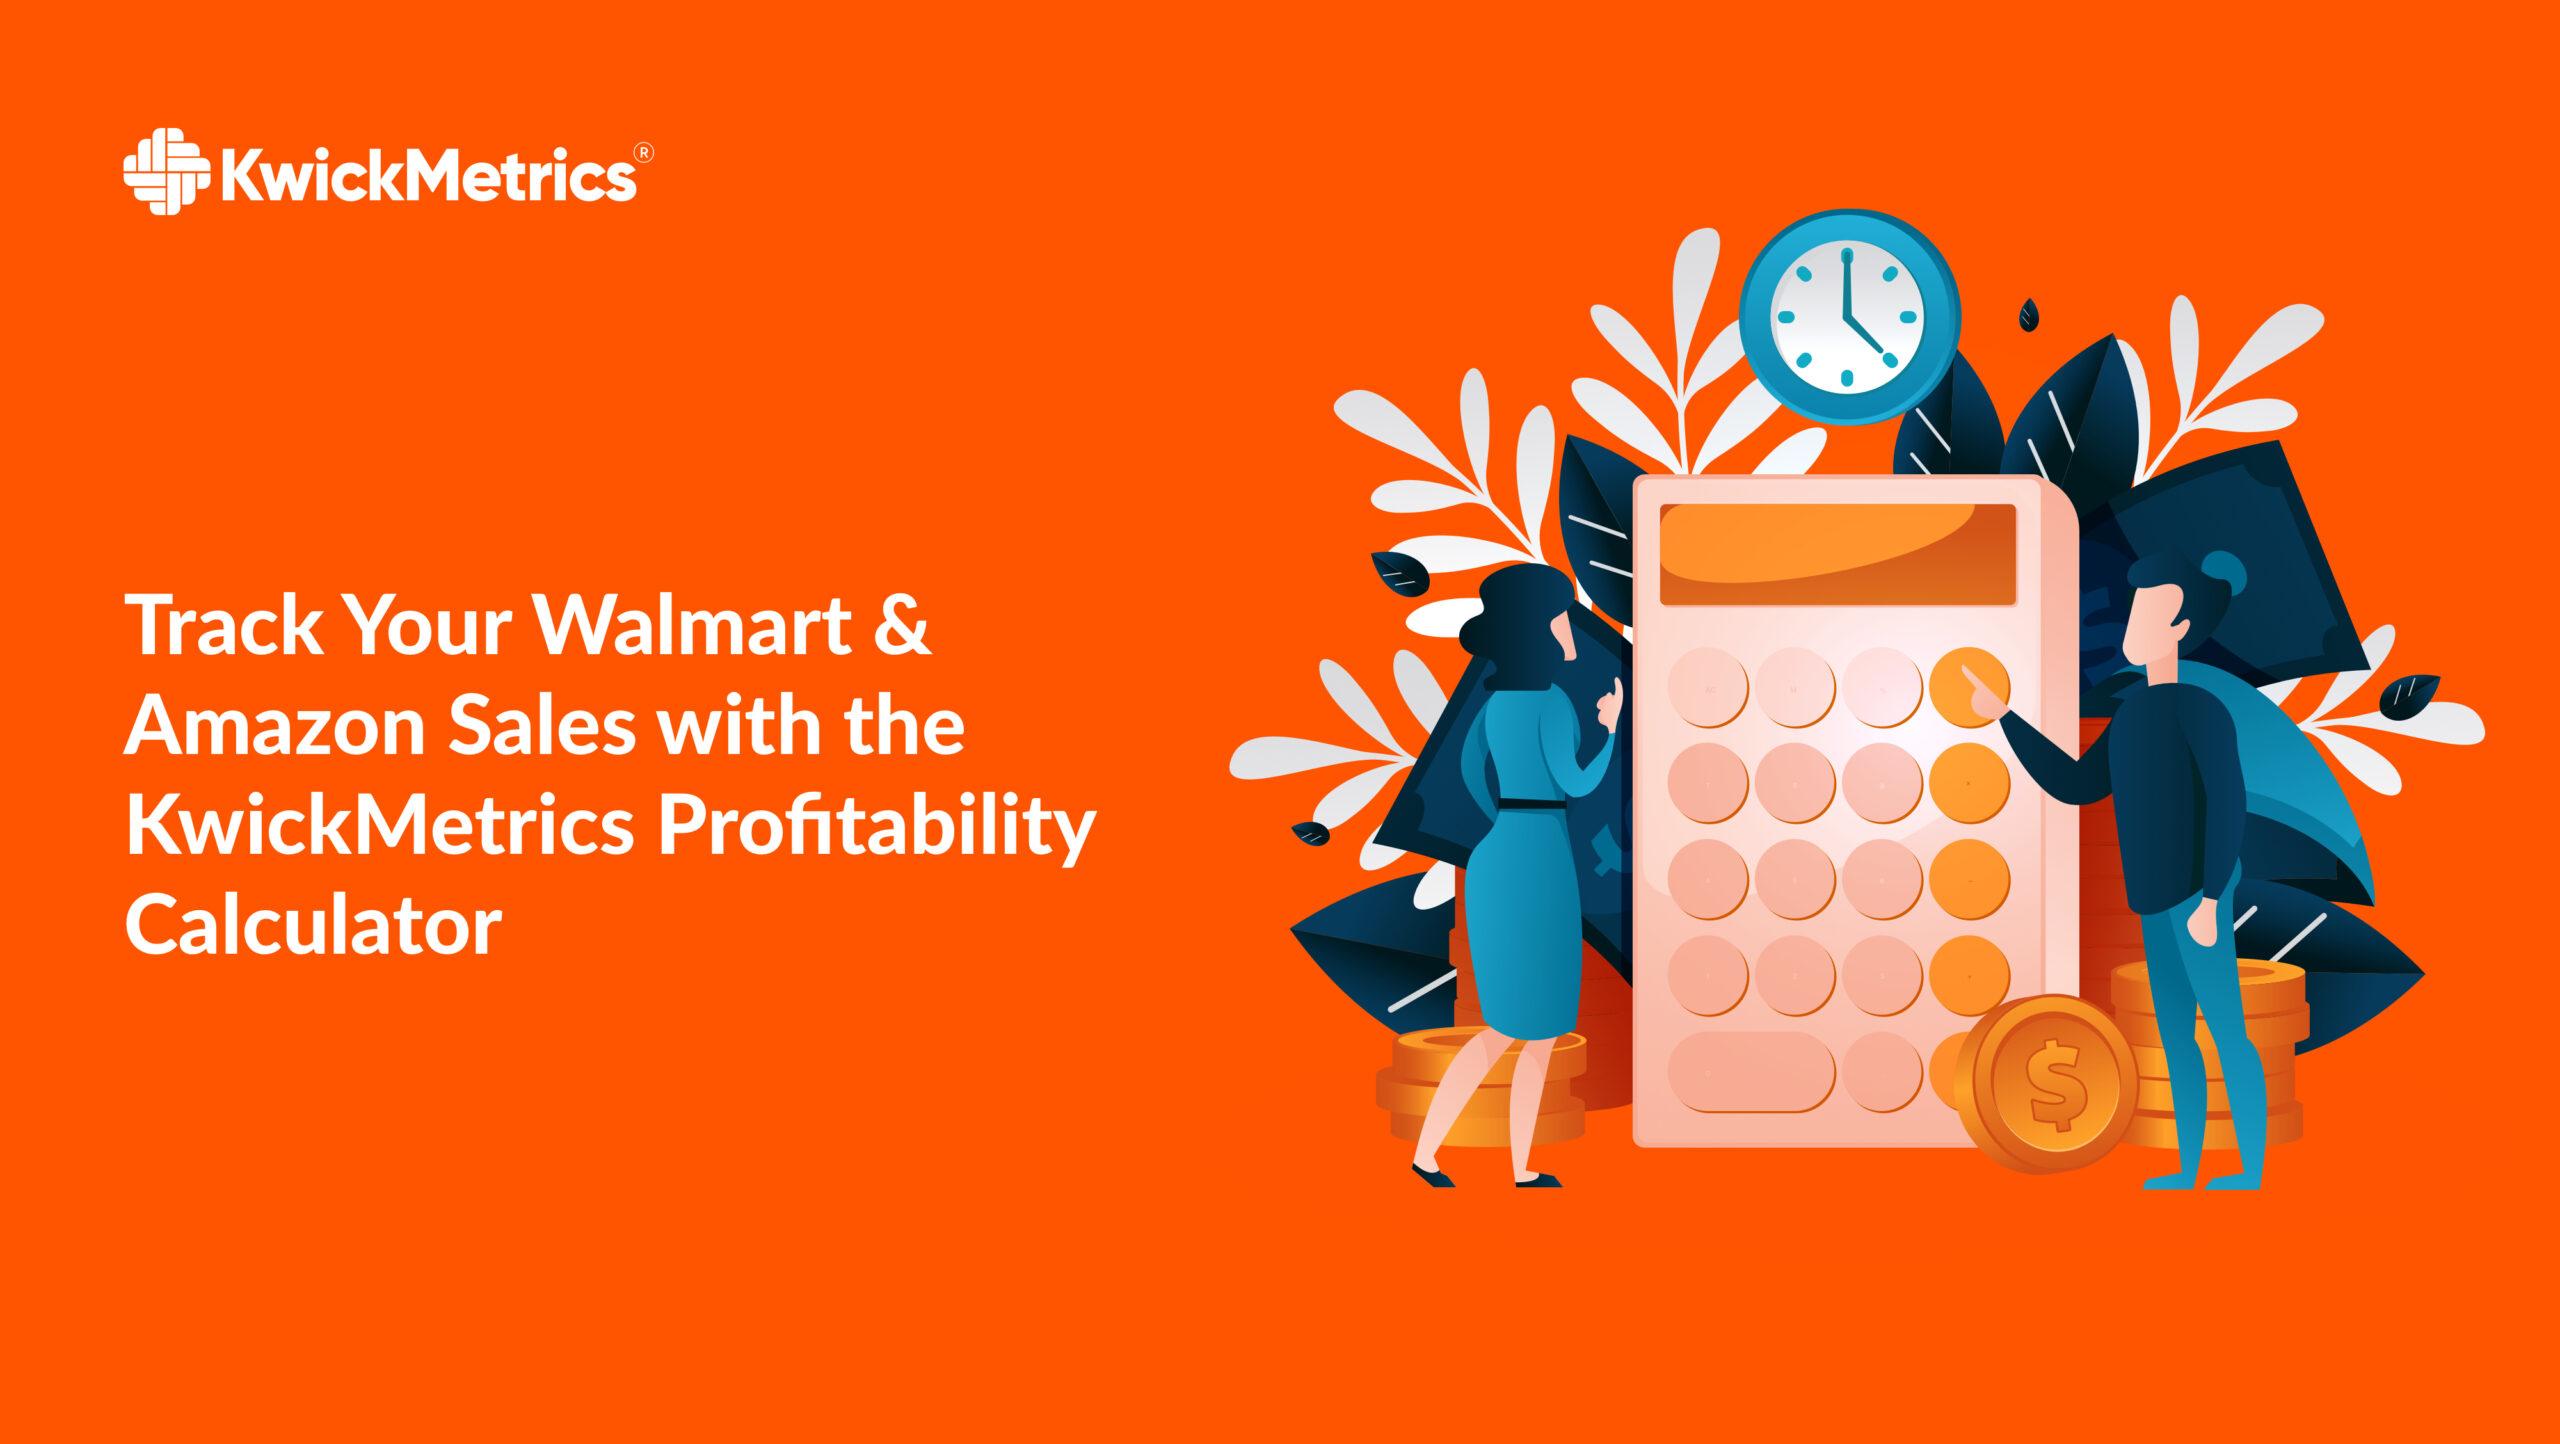 Track Your Walmart & Amazon Sales with KwickMetrics - Profitability Calculator